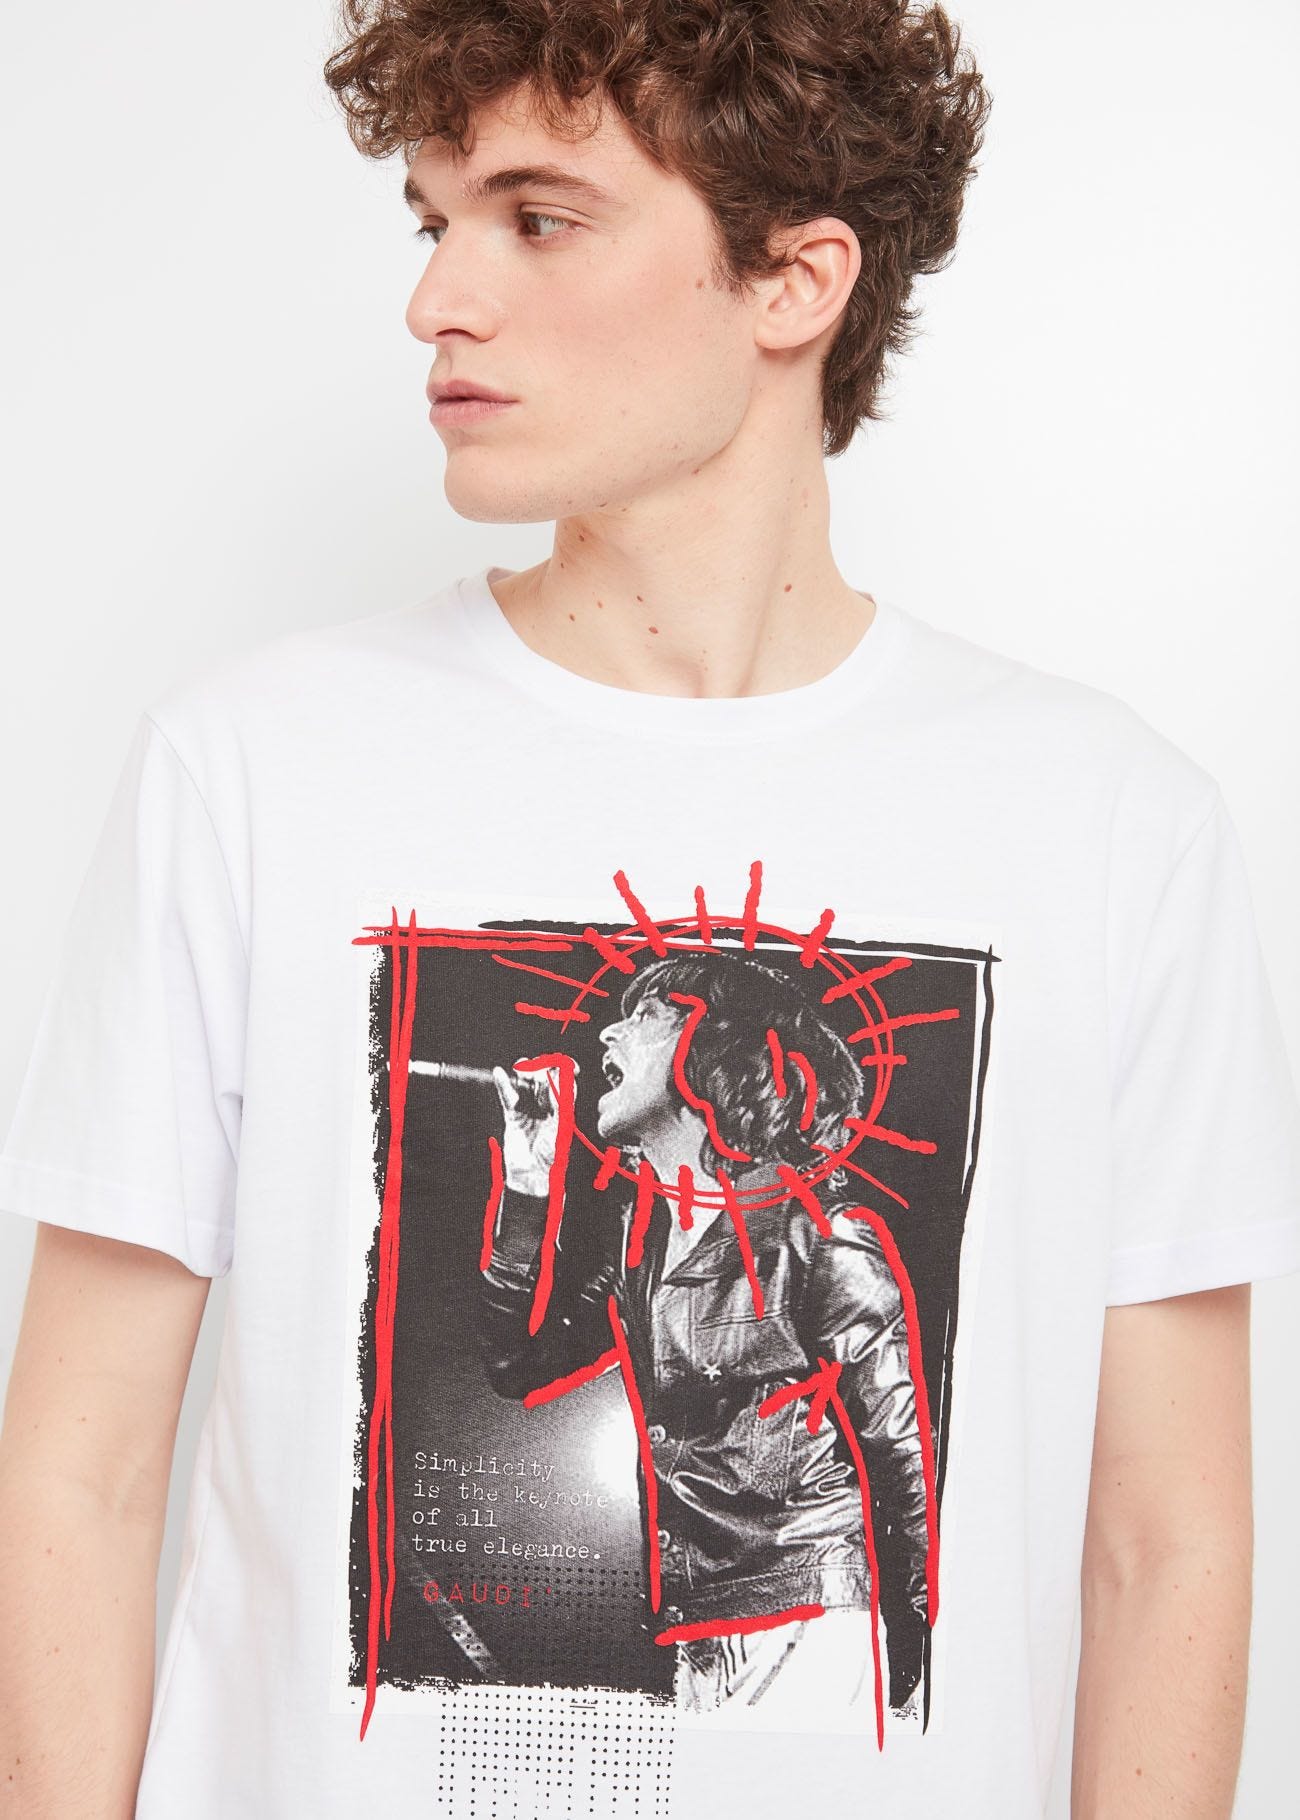 Mick Jagger T-shirt